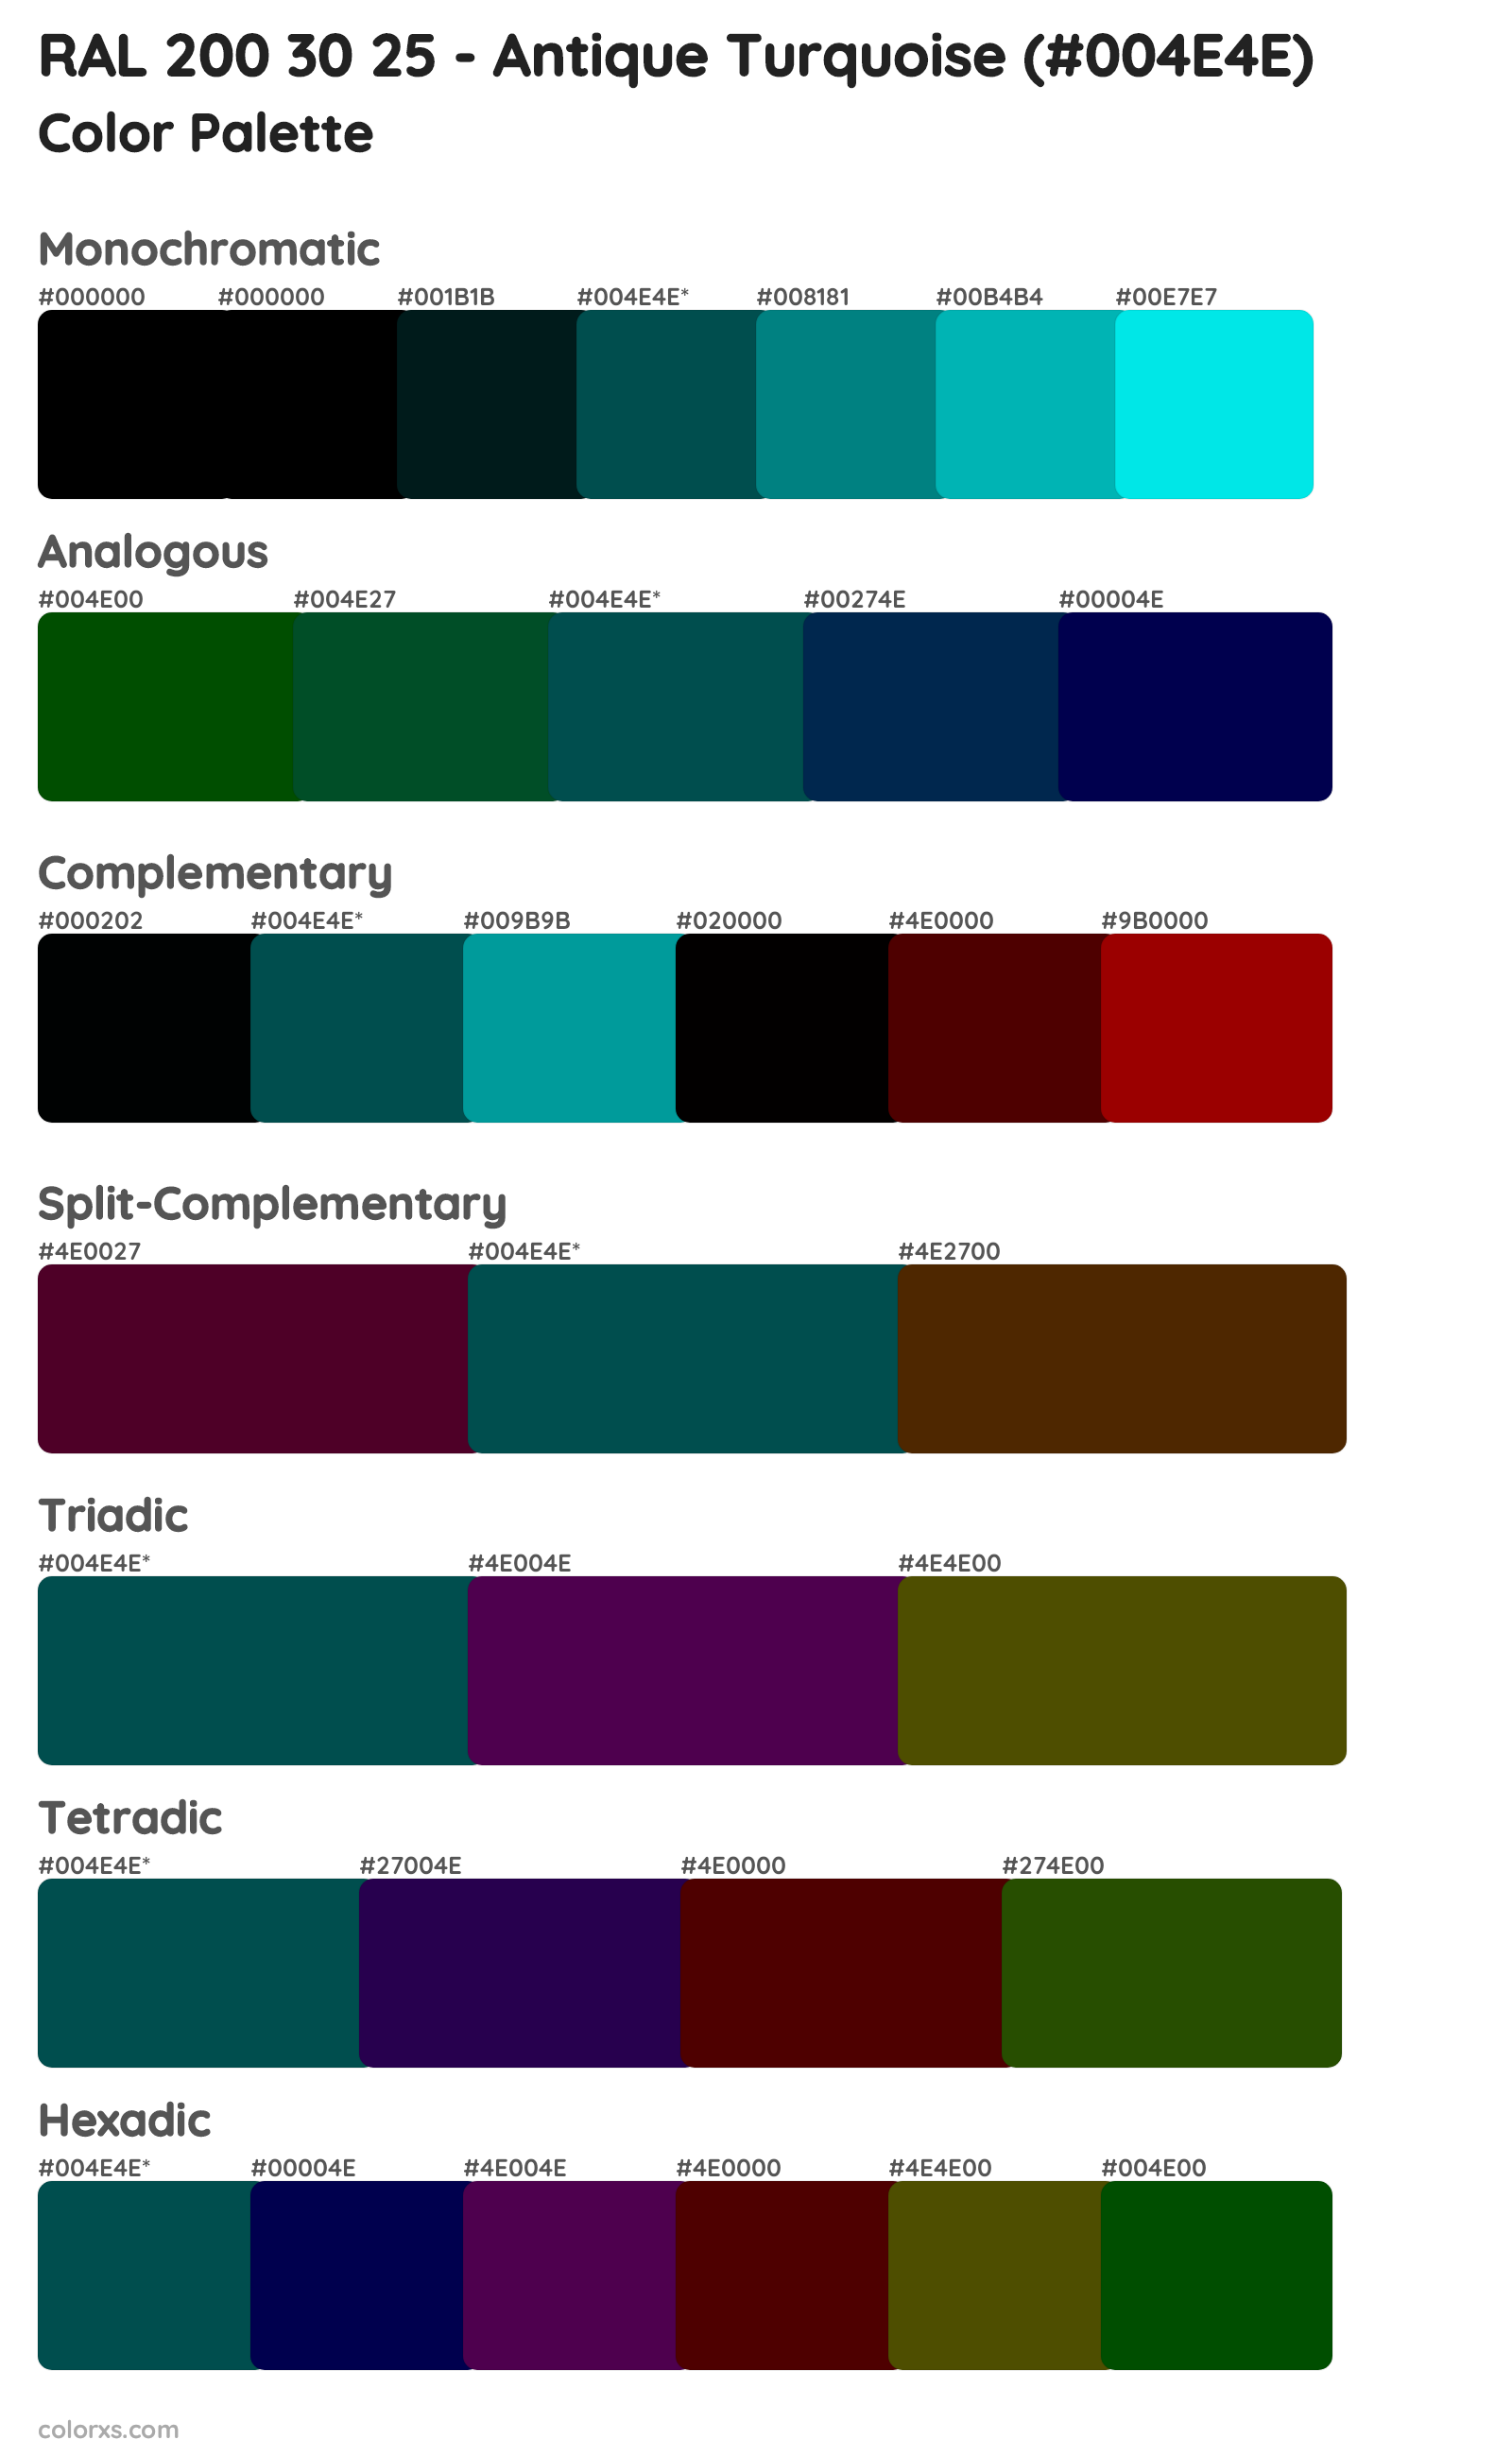 RAL 200 30 25 - Antique Turquoise Color Scheme Palettes